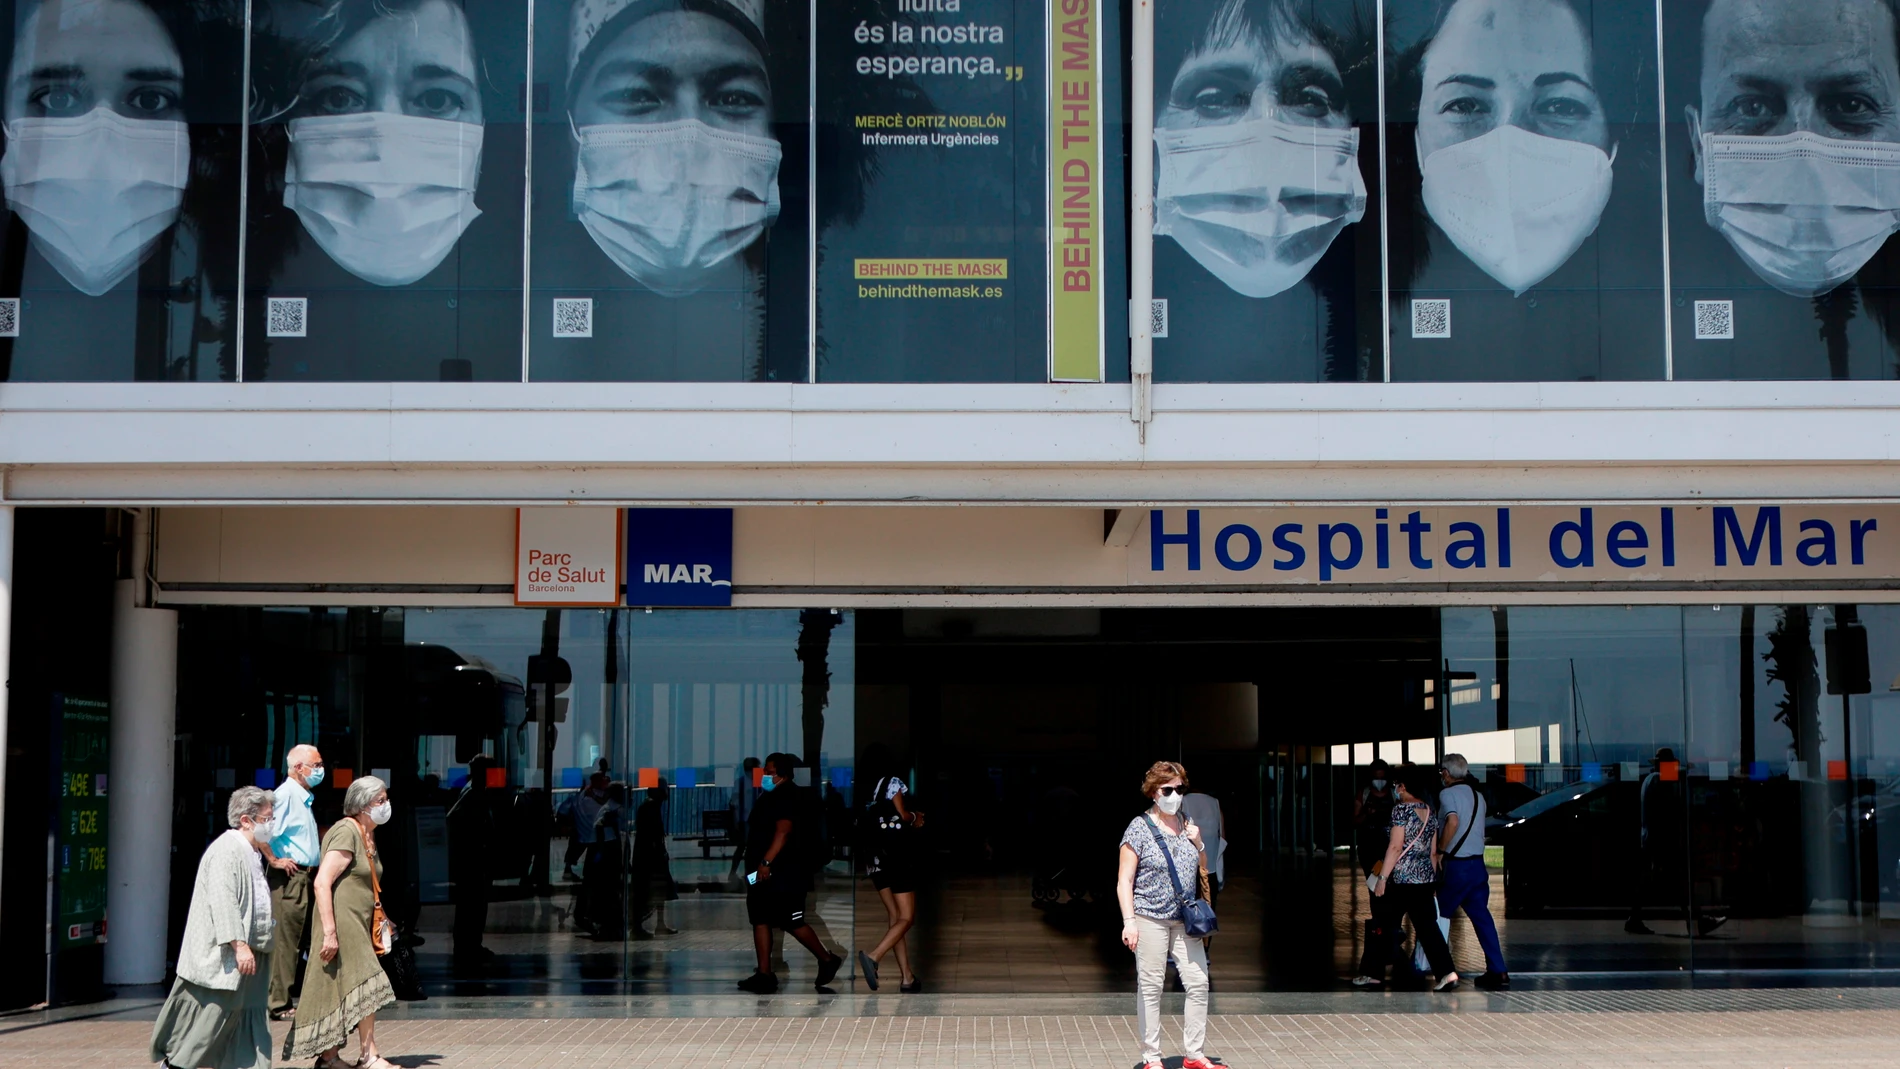 El Hospital del Mar de Barcelona es uno de los seis hospitales de la ciudad que participan en el proyecto Behind the Mask, que consiste en cubrir sus fachadas con enormes fotografías de sanitarios para homenajear al colectivo